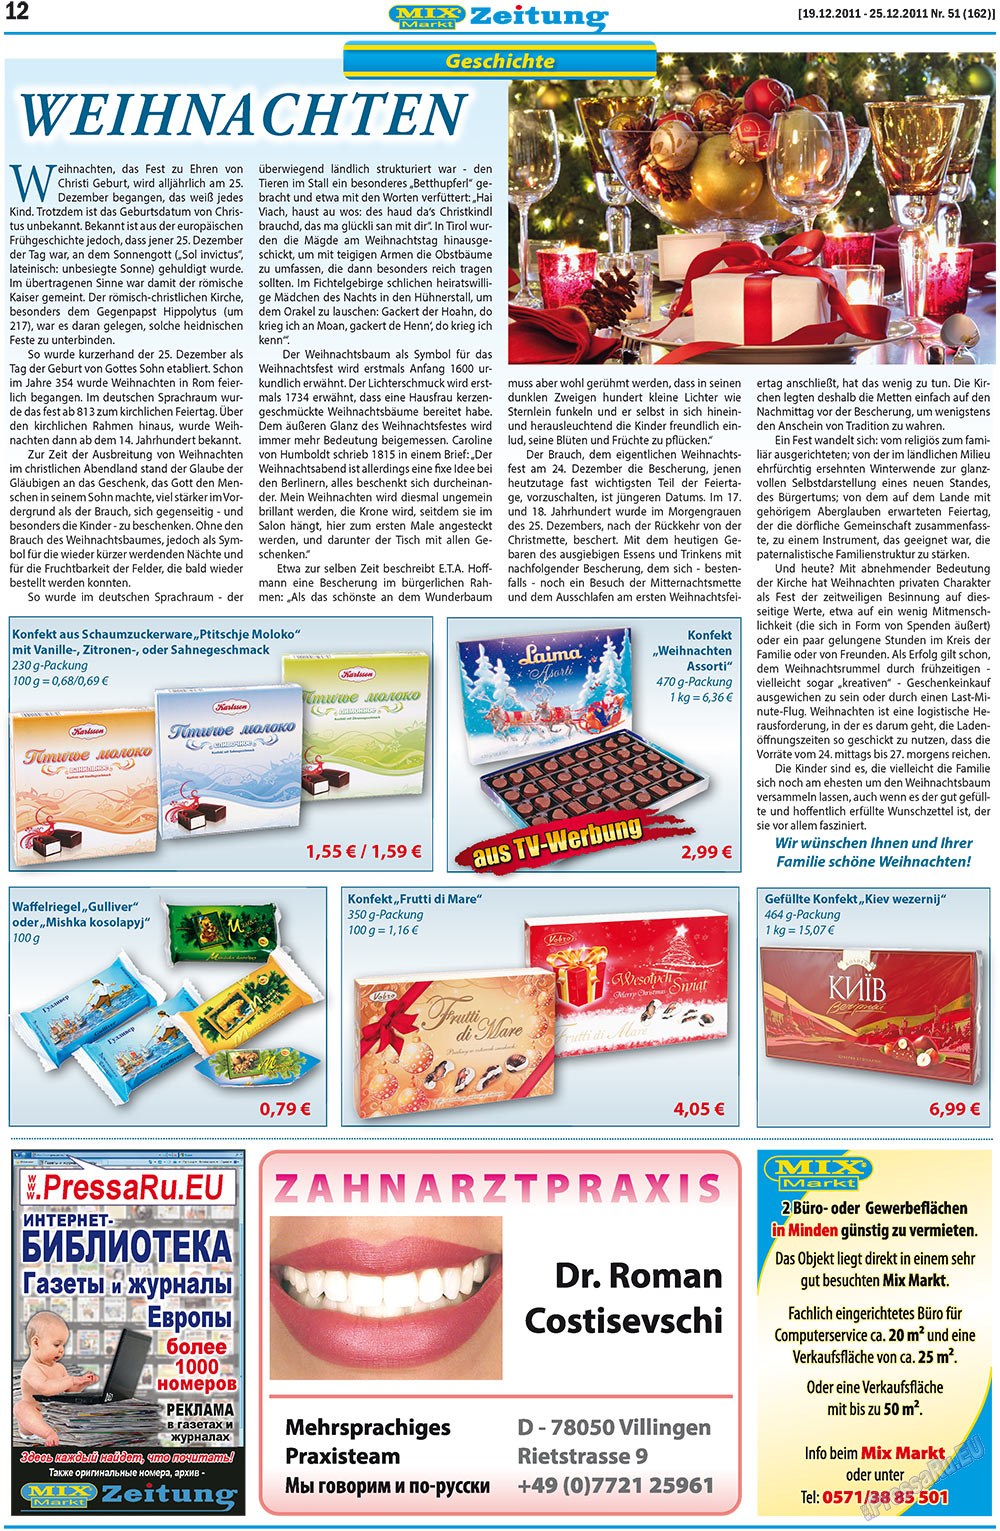 MIX-Markt Zeitung, газета. 2011 №51 стр.12